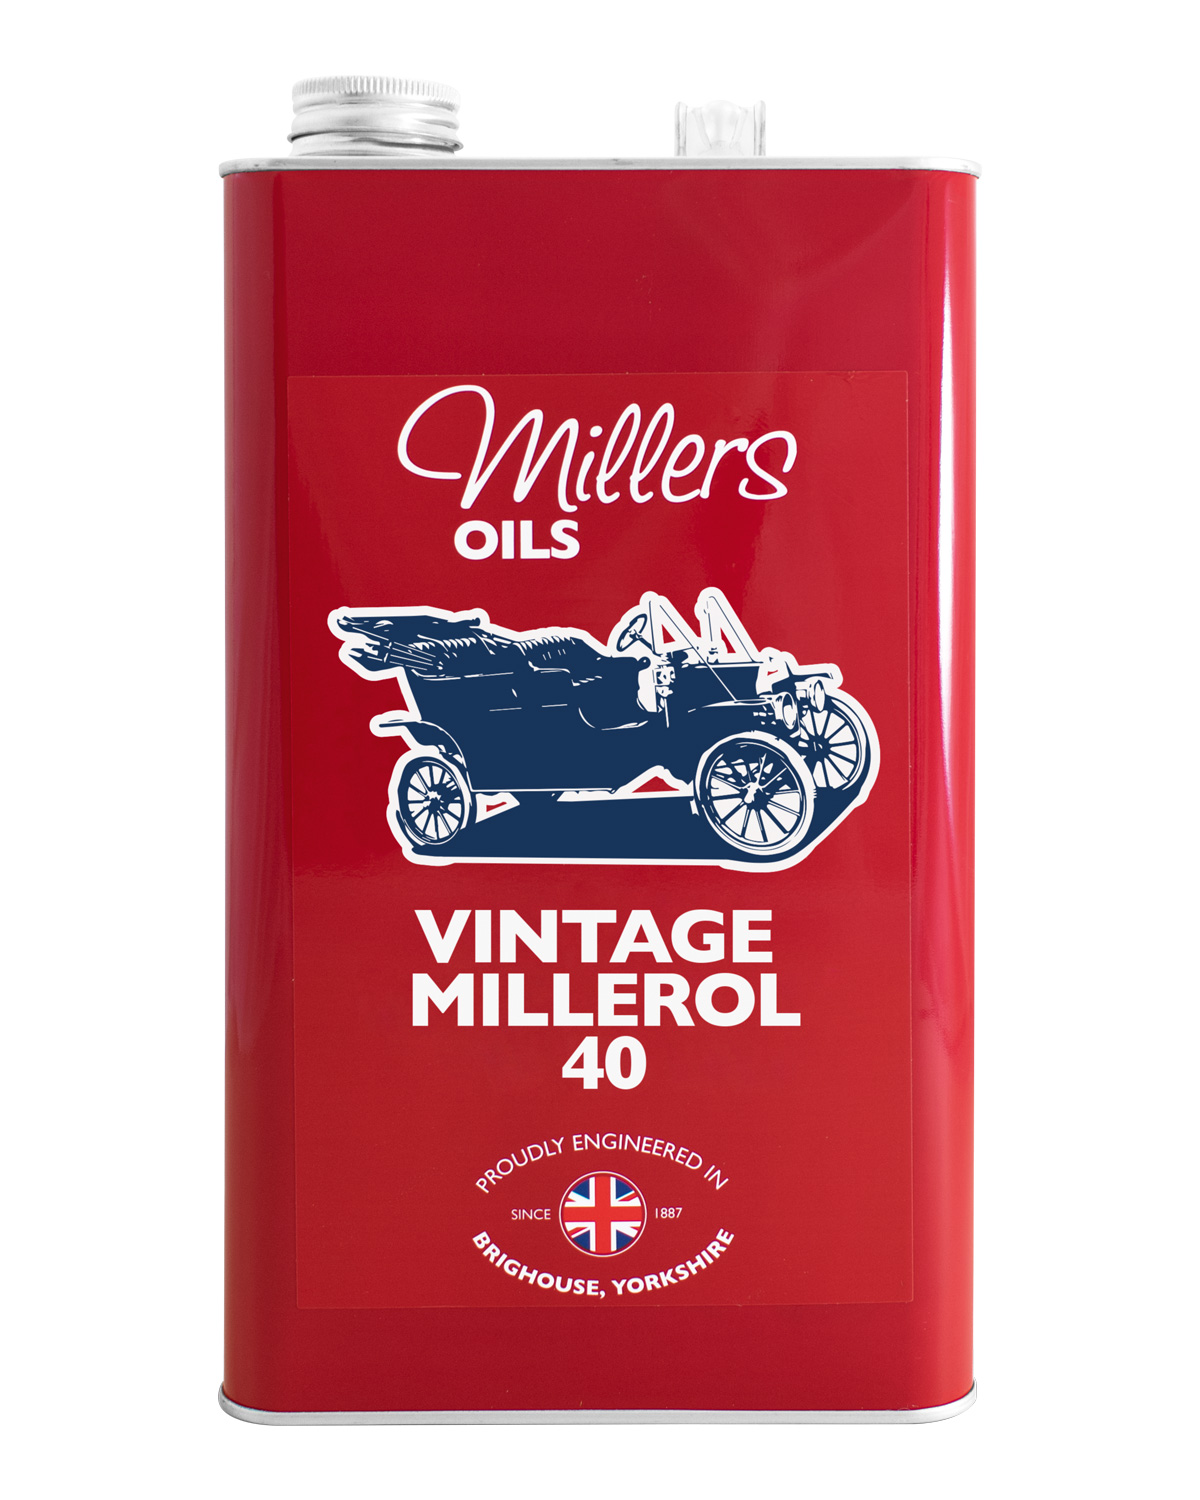 Millers Oils Vintage Millerol 40, 5 Liter